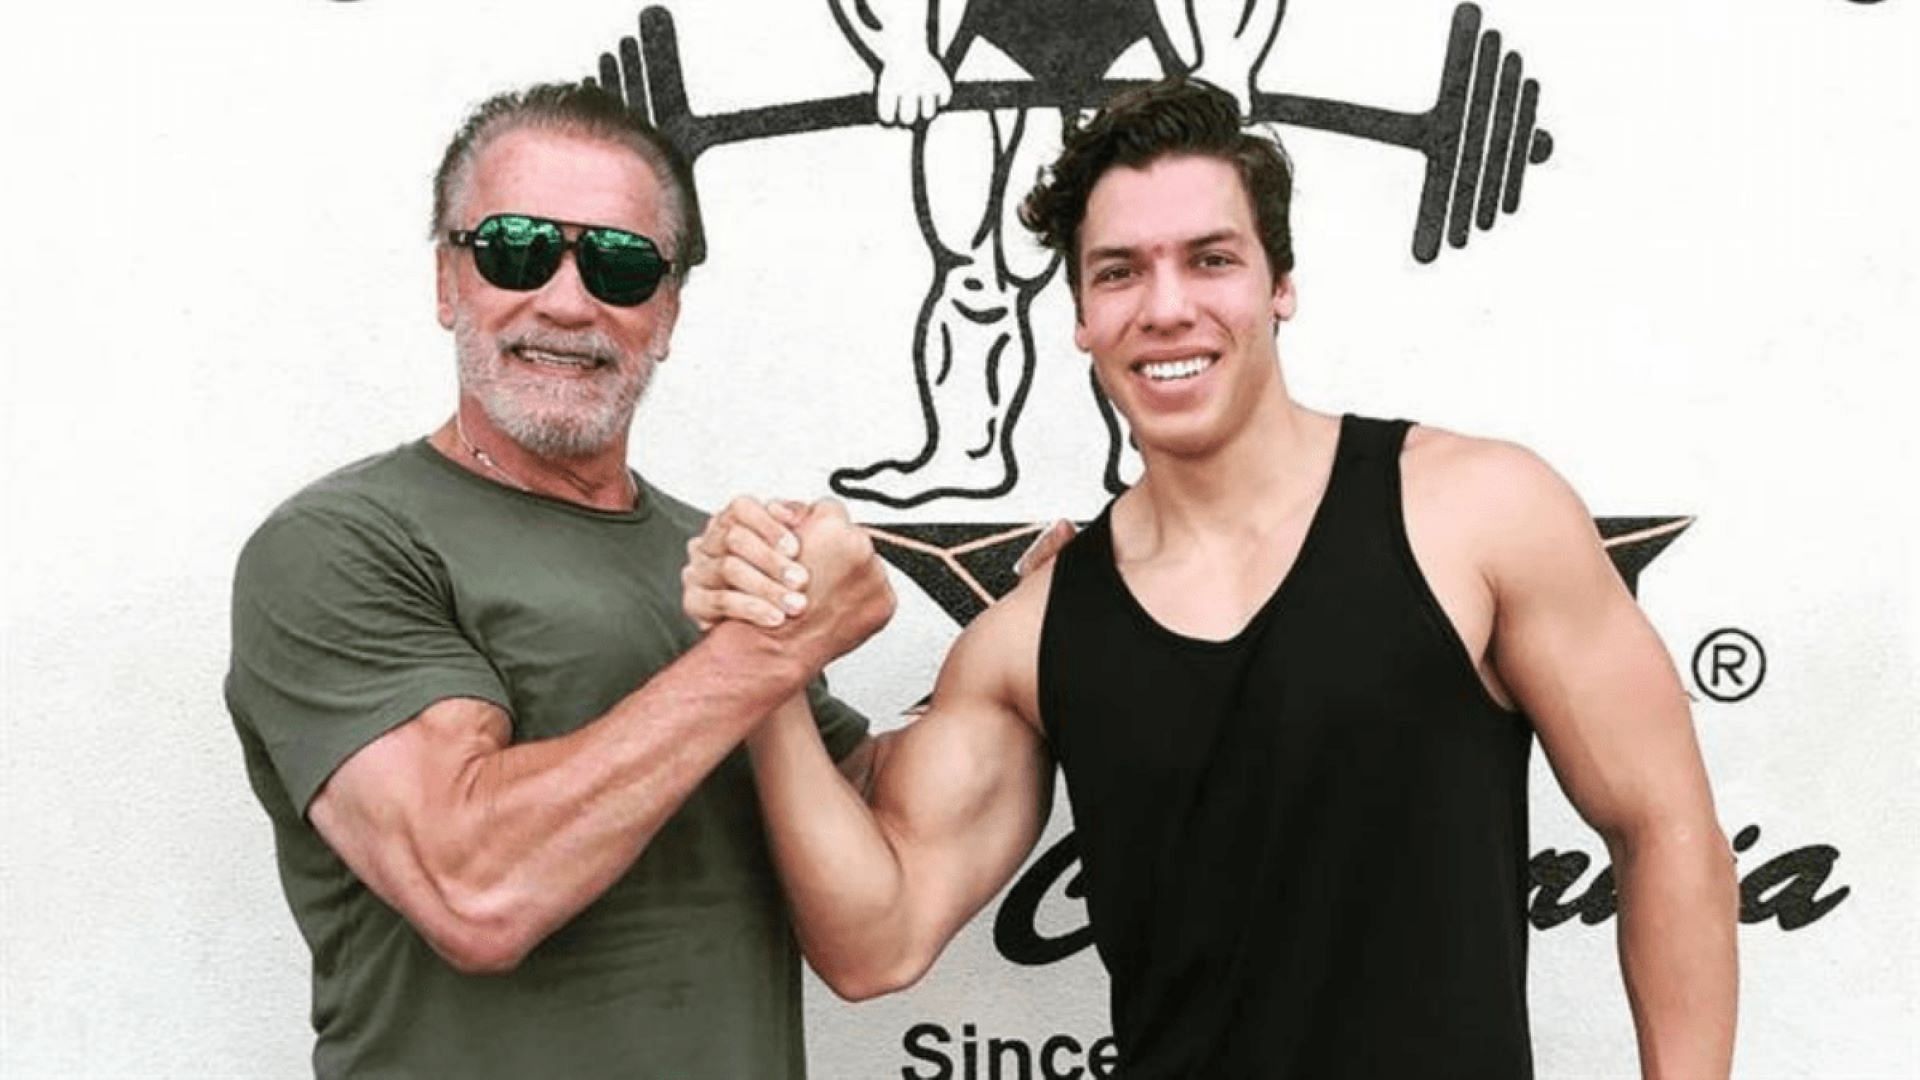 Arnold Schwarzenegger and Joseph Baena (Image via TEAM LEFTOYE )